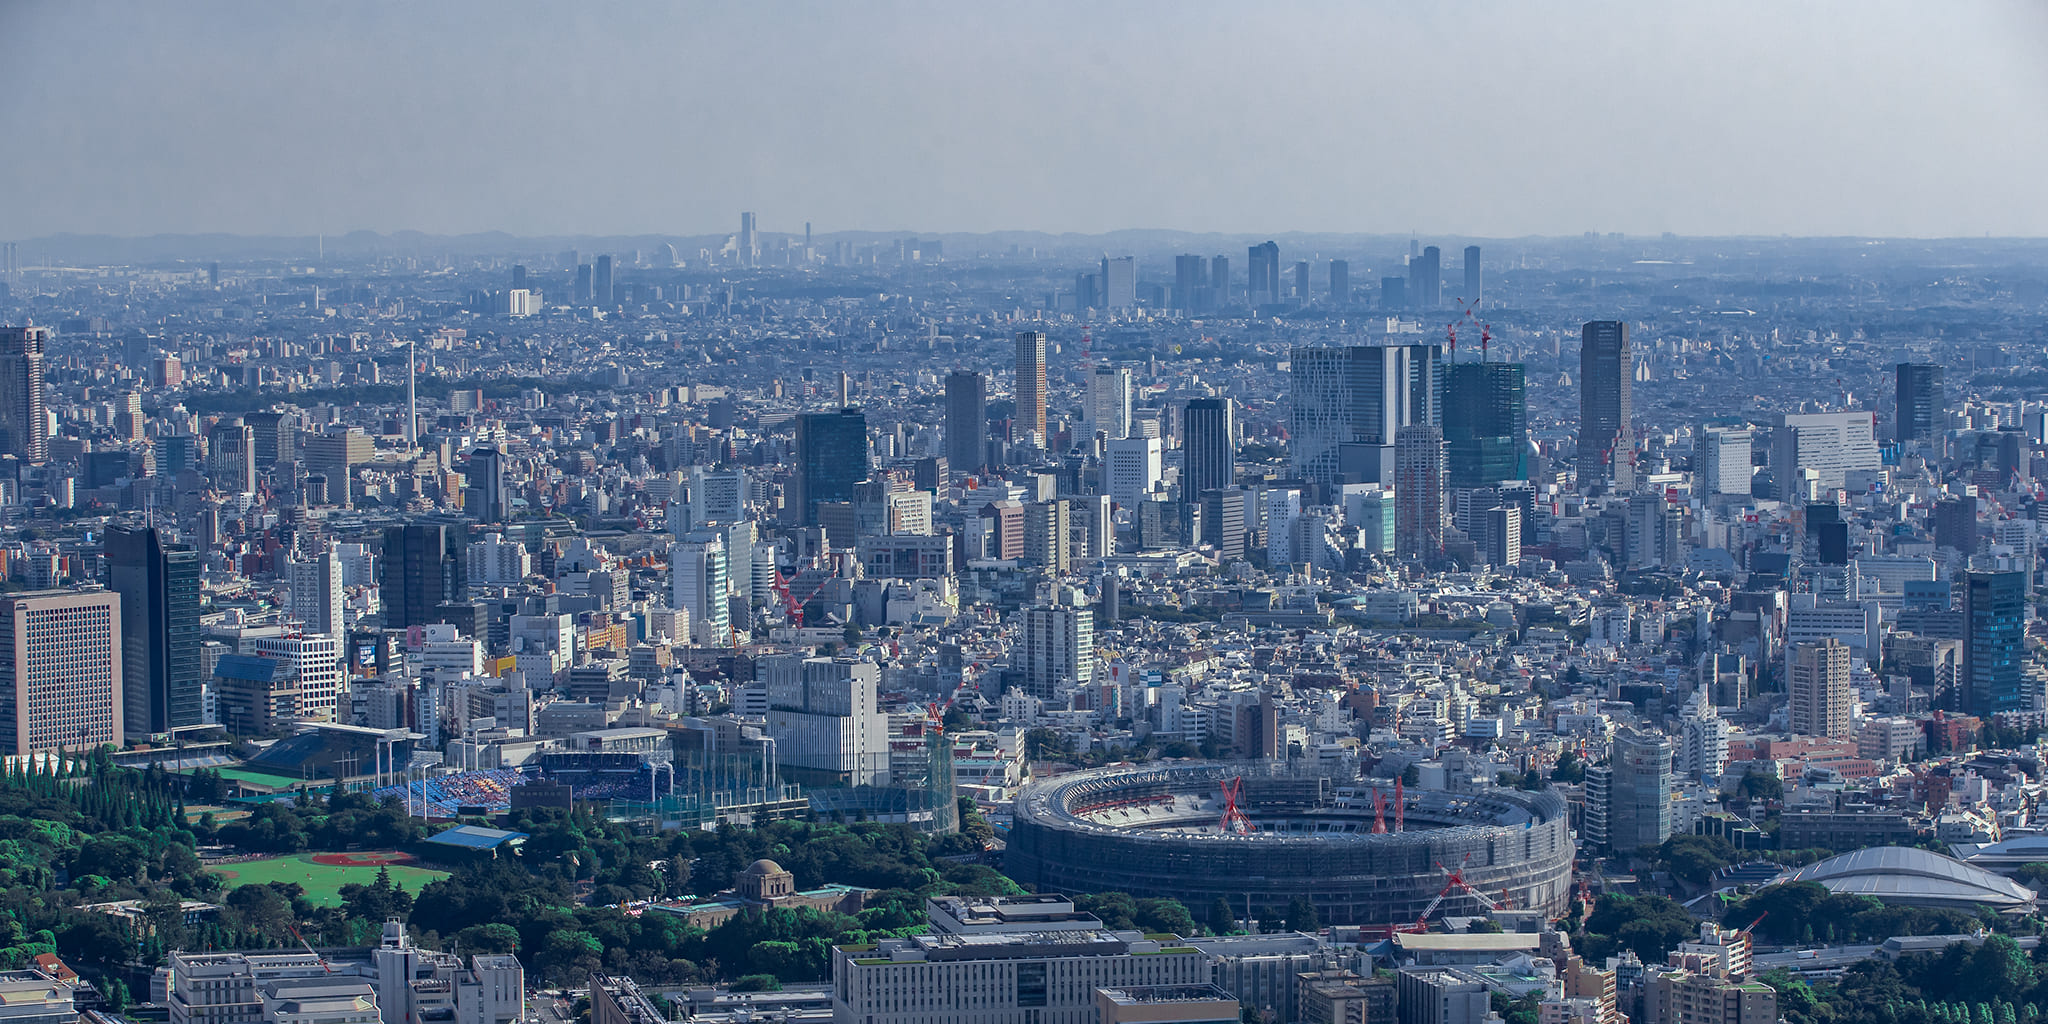 ヘリコプターで東京上空をフライトして見えるスタジアム